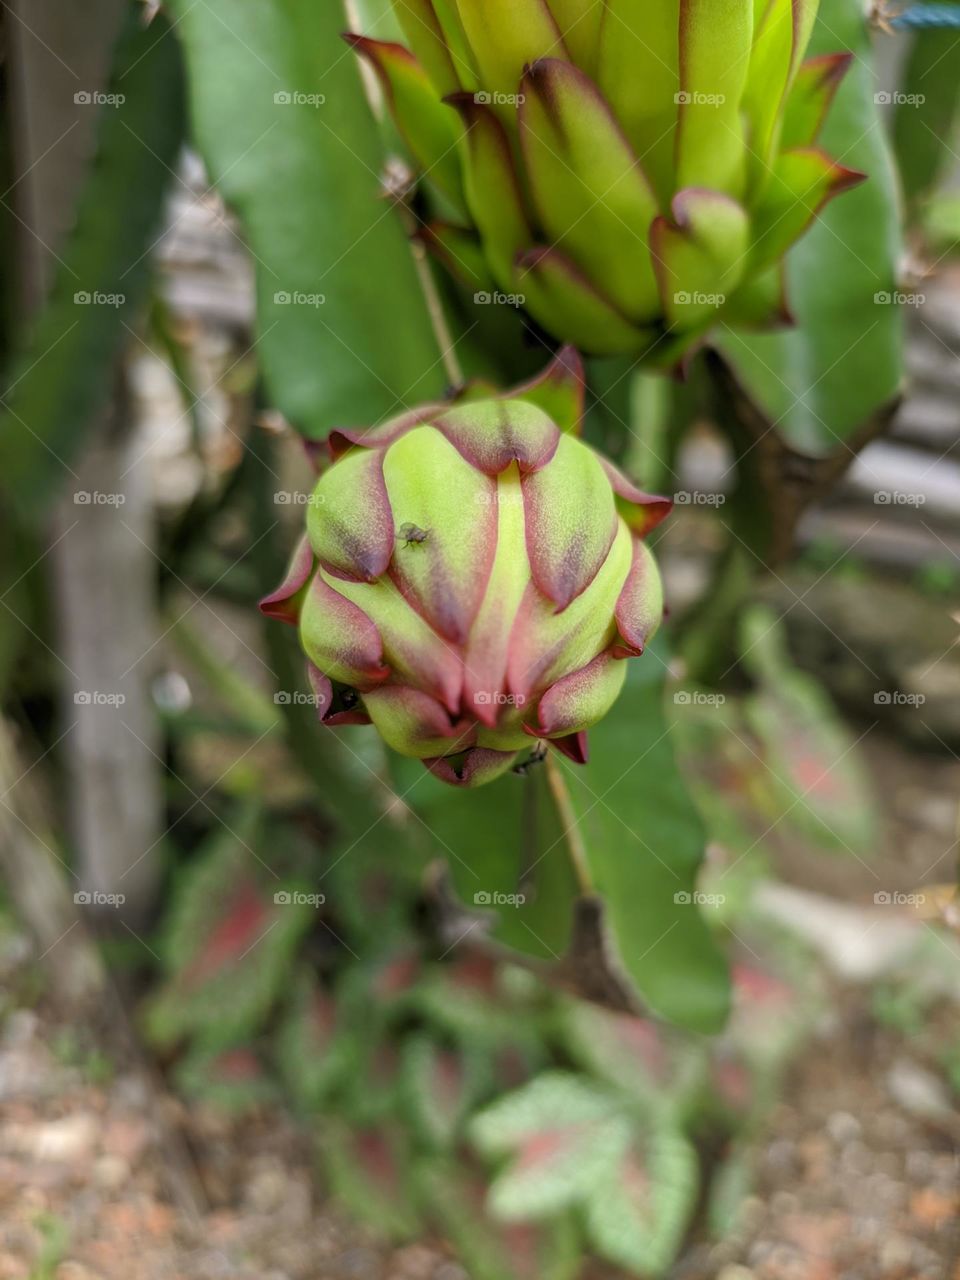 Dragon fruit flower bud